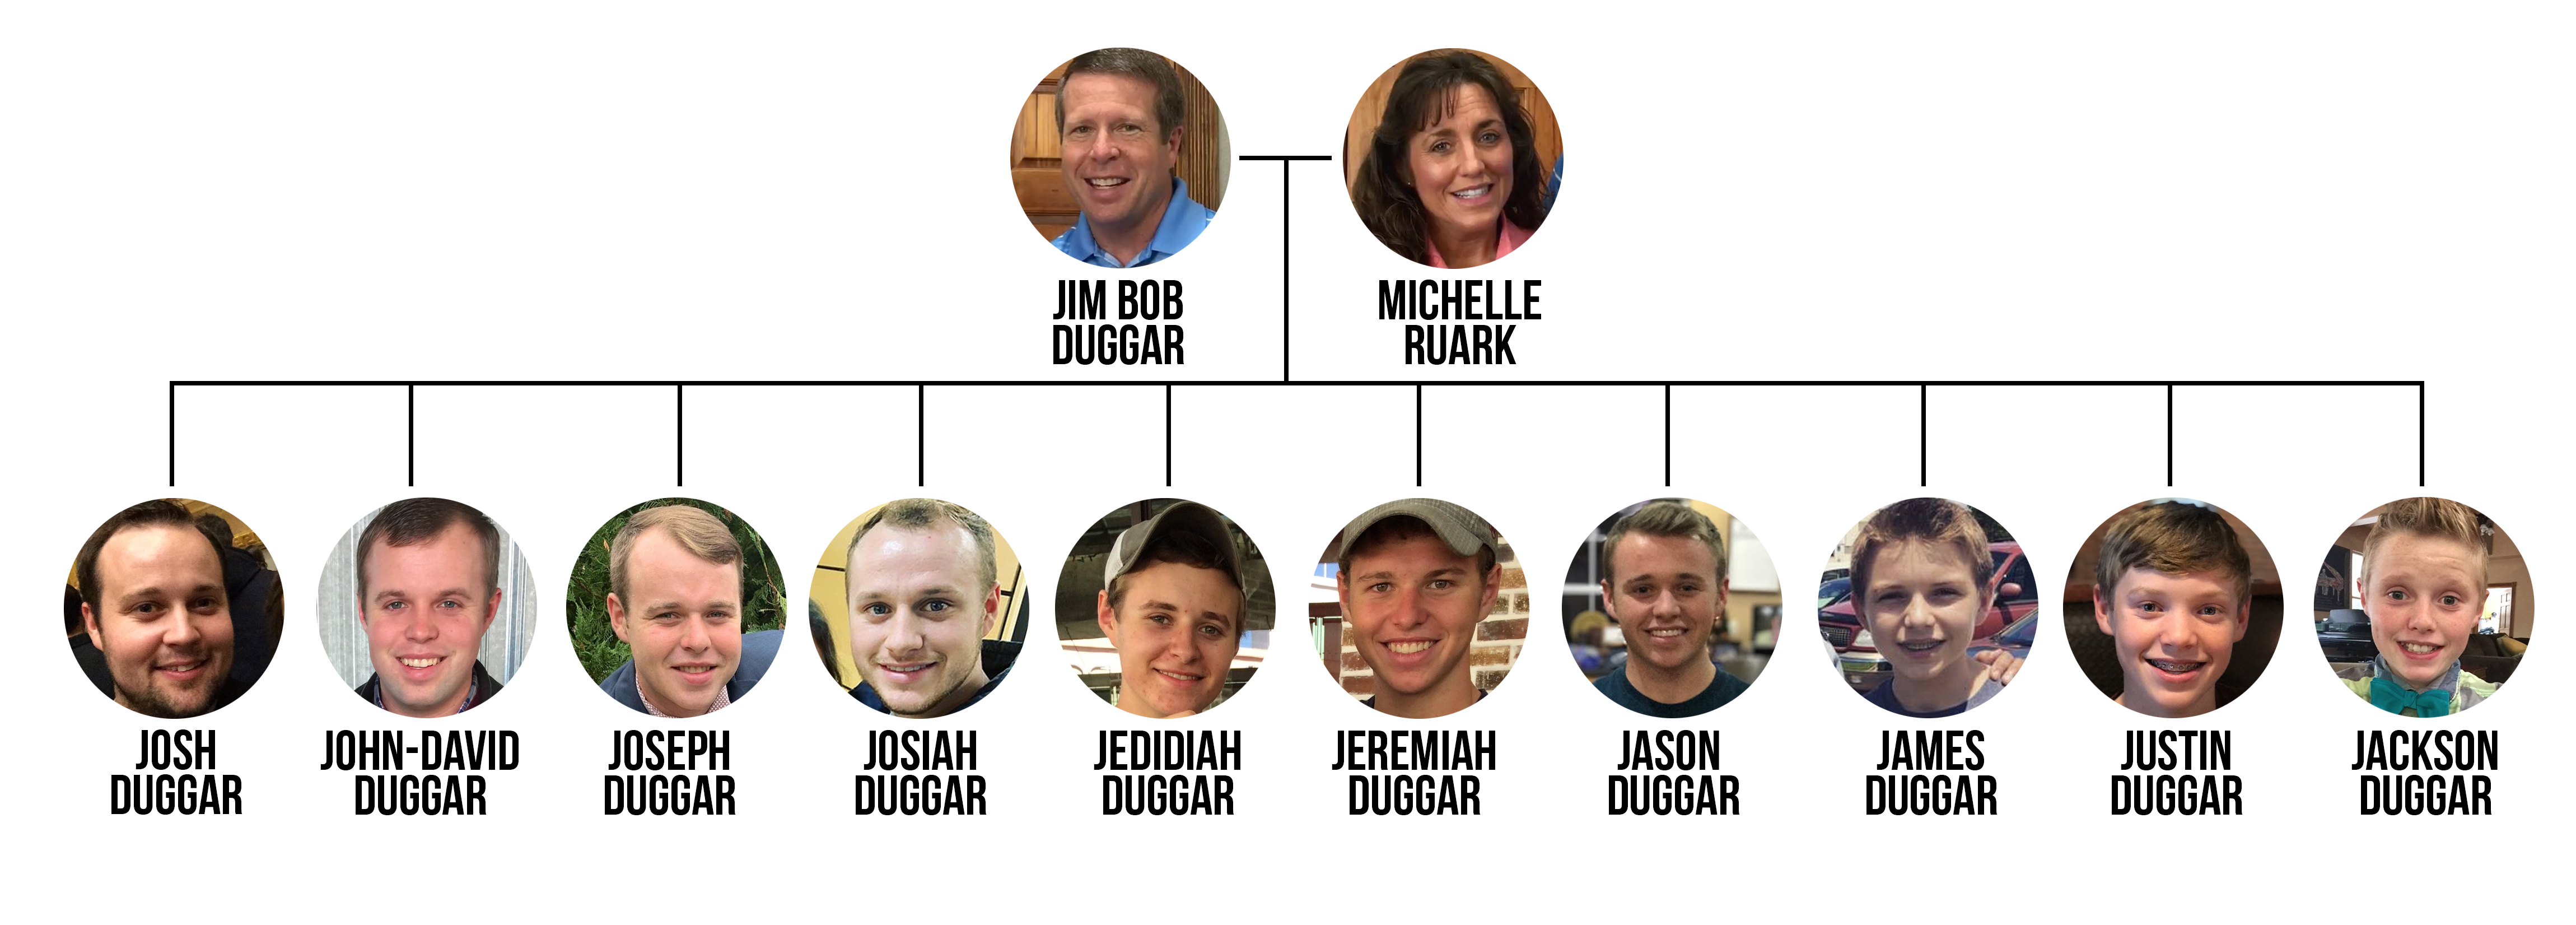 the jackson family tree